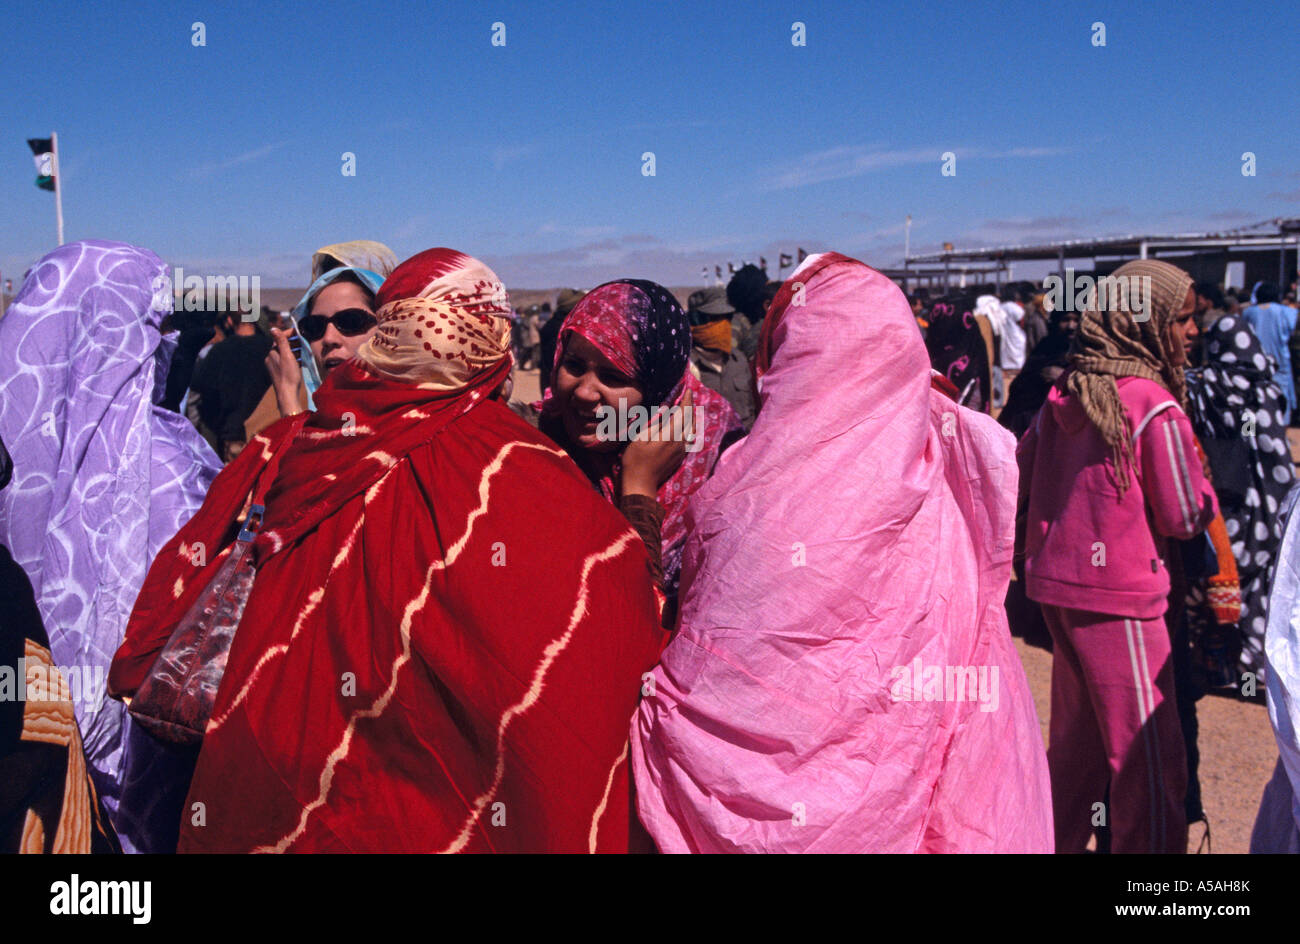 Les réfugiés sahraouis à Tindouf, l'ouest de l'Algérie Banque D'Images